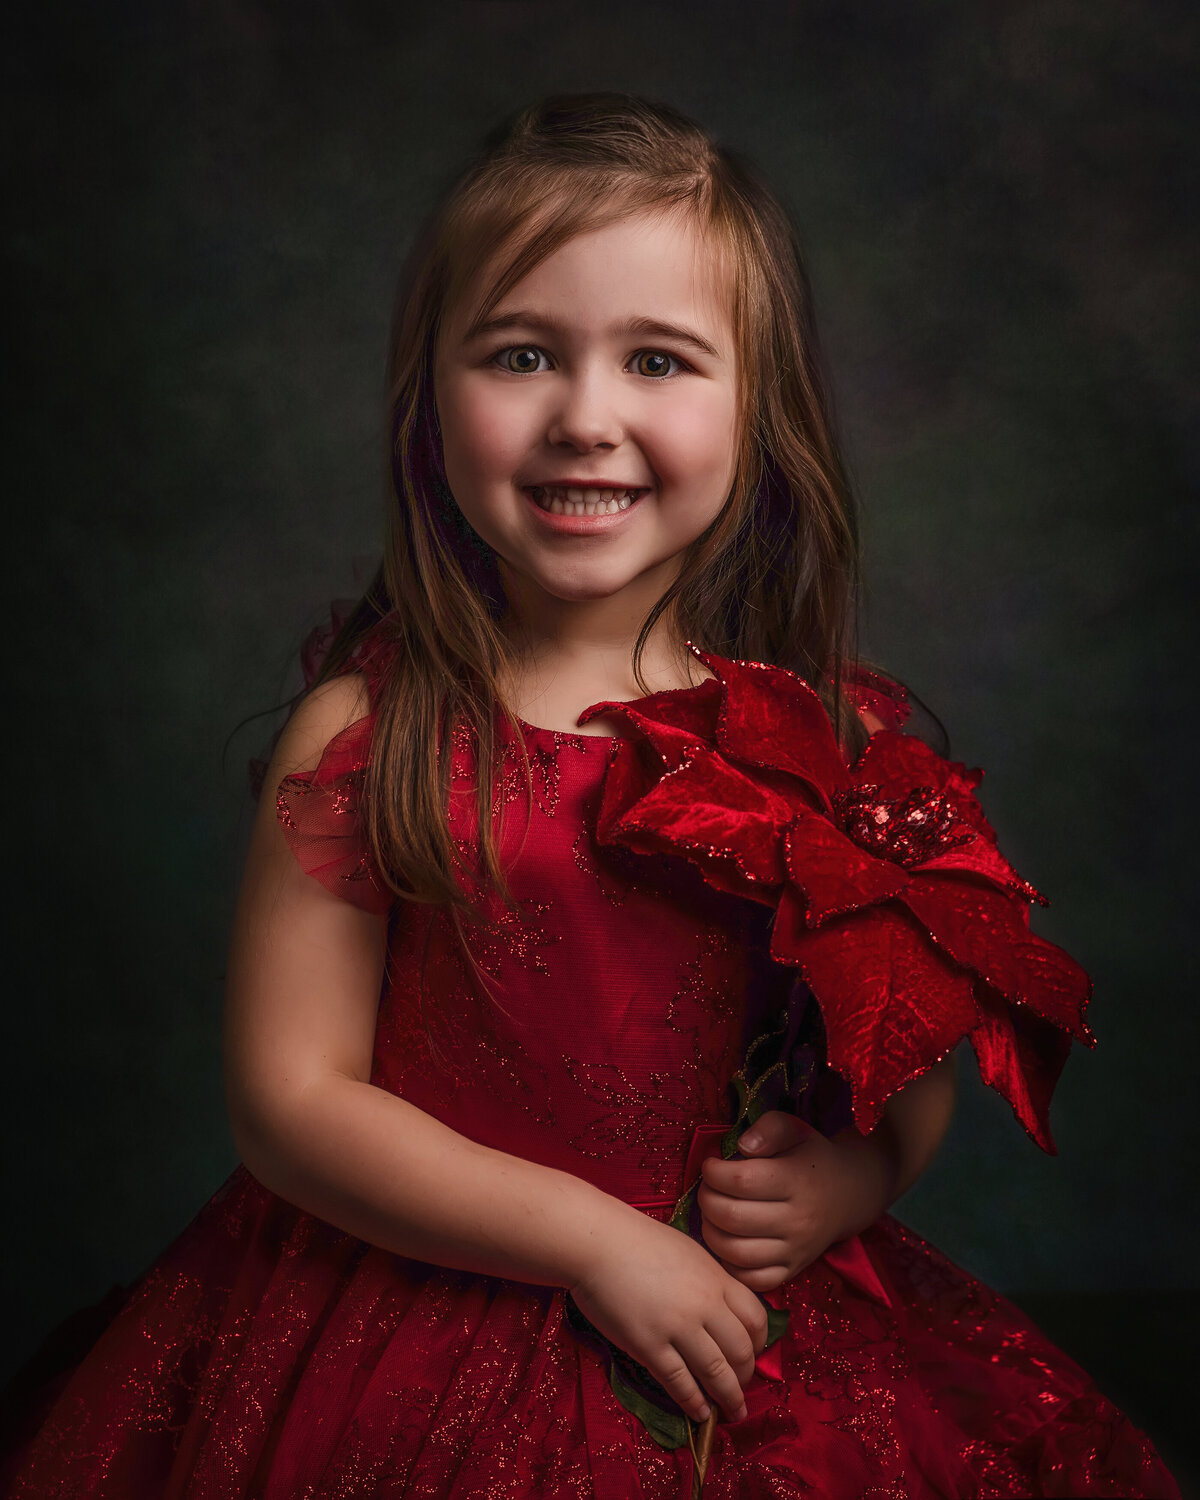 Little-girl-christmas-portrait